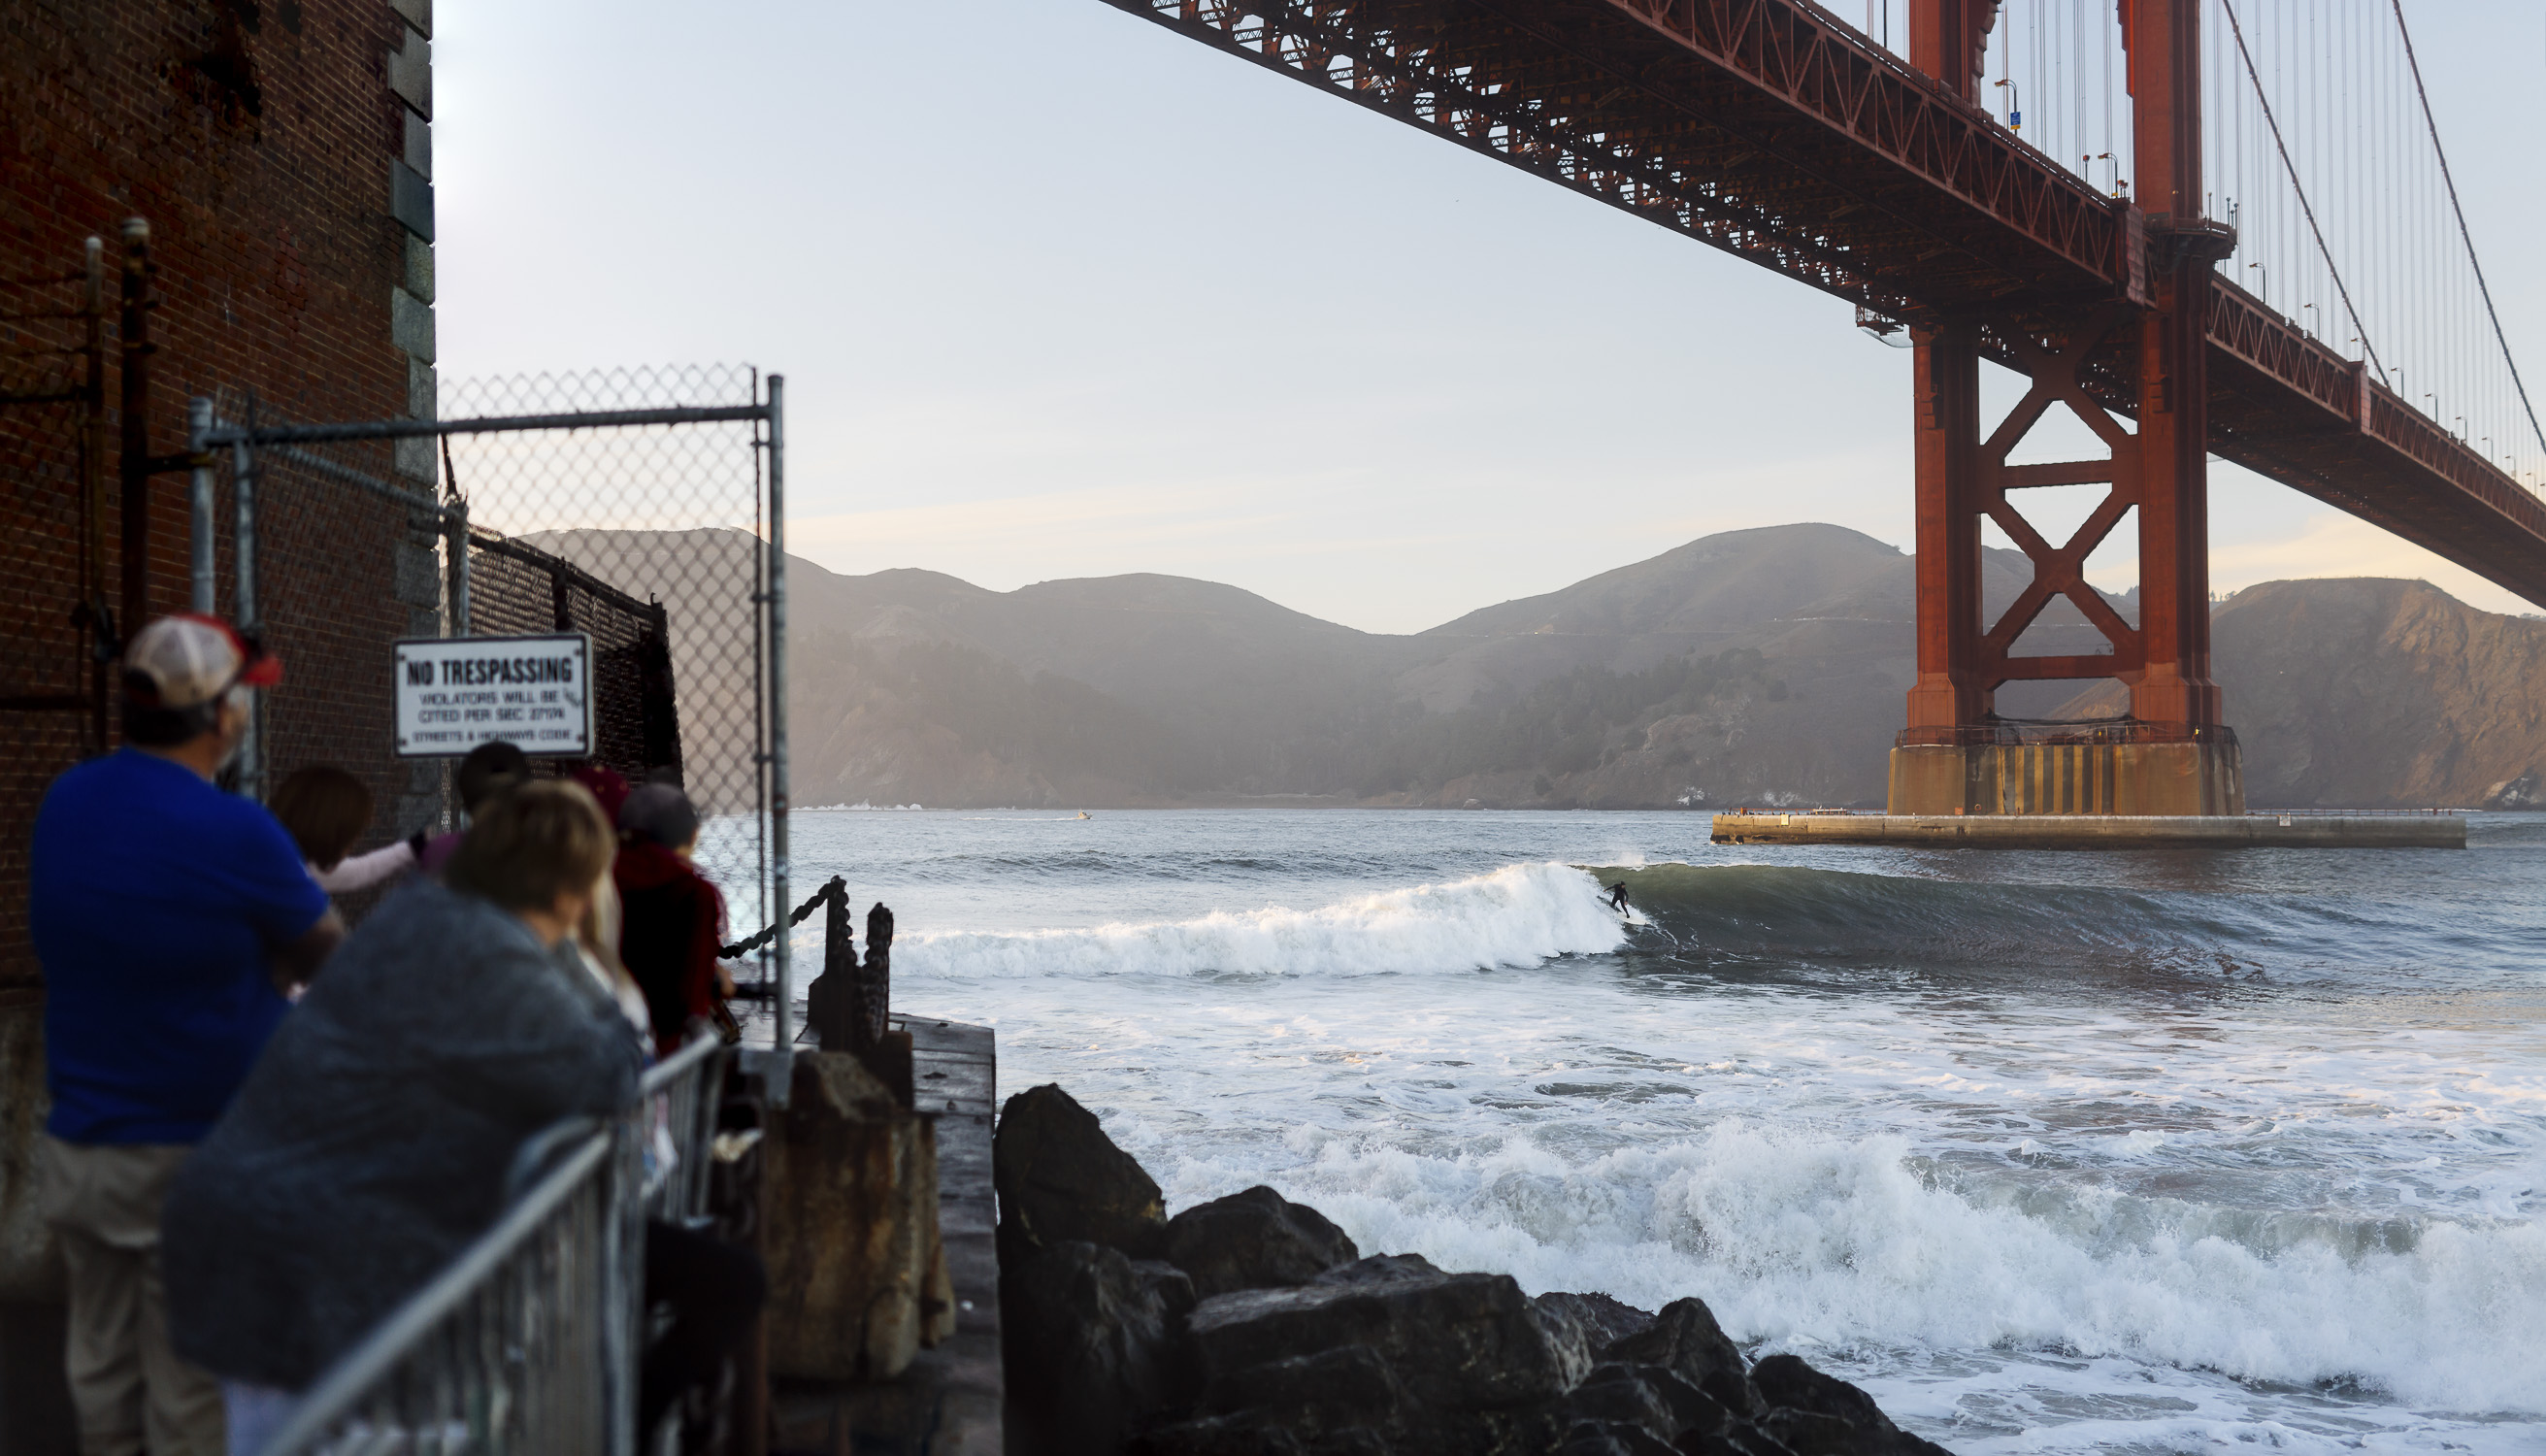 Portfolio(20151026 – Surfer Golden Gate Bridge – 141-Bearbeitet)